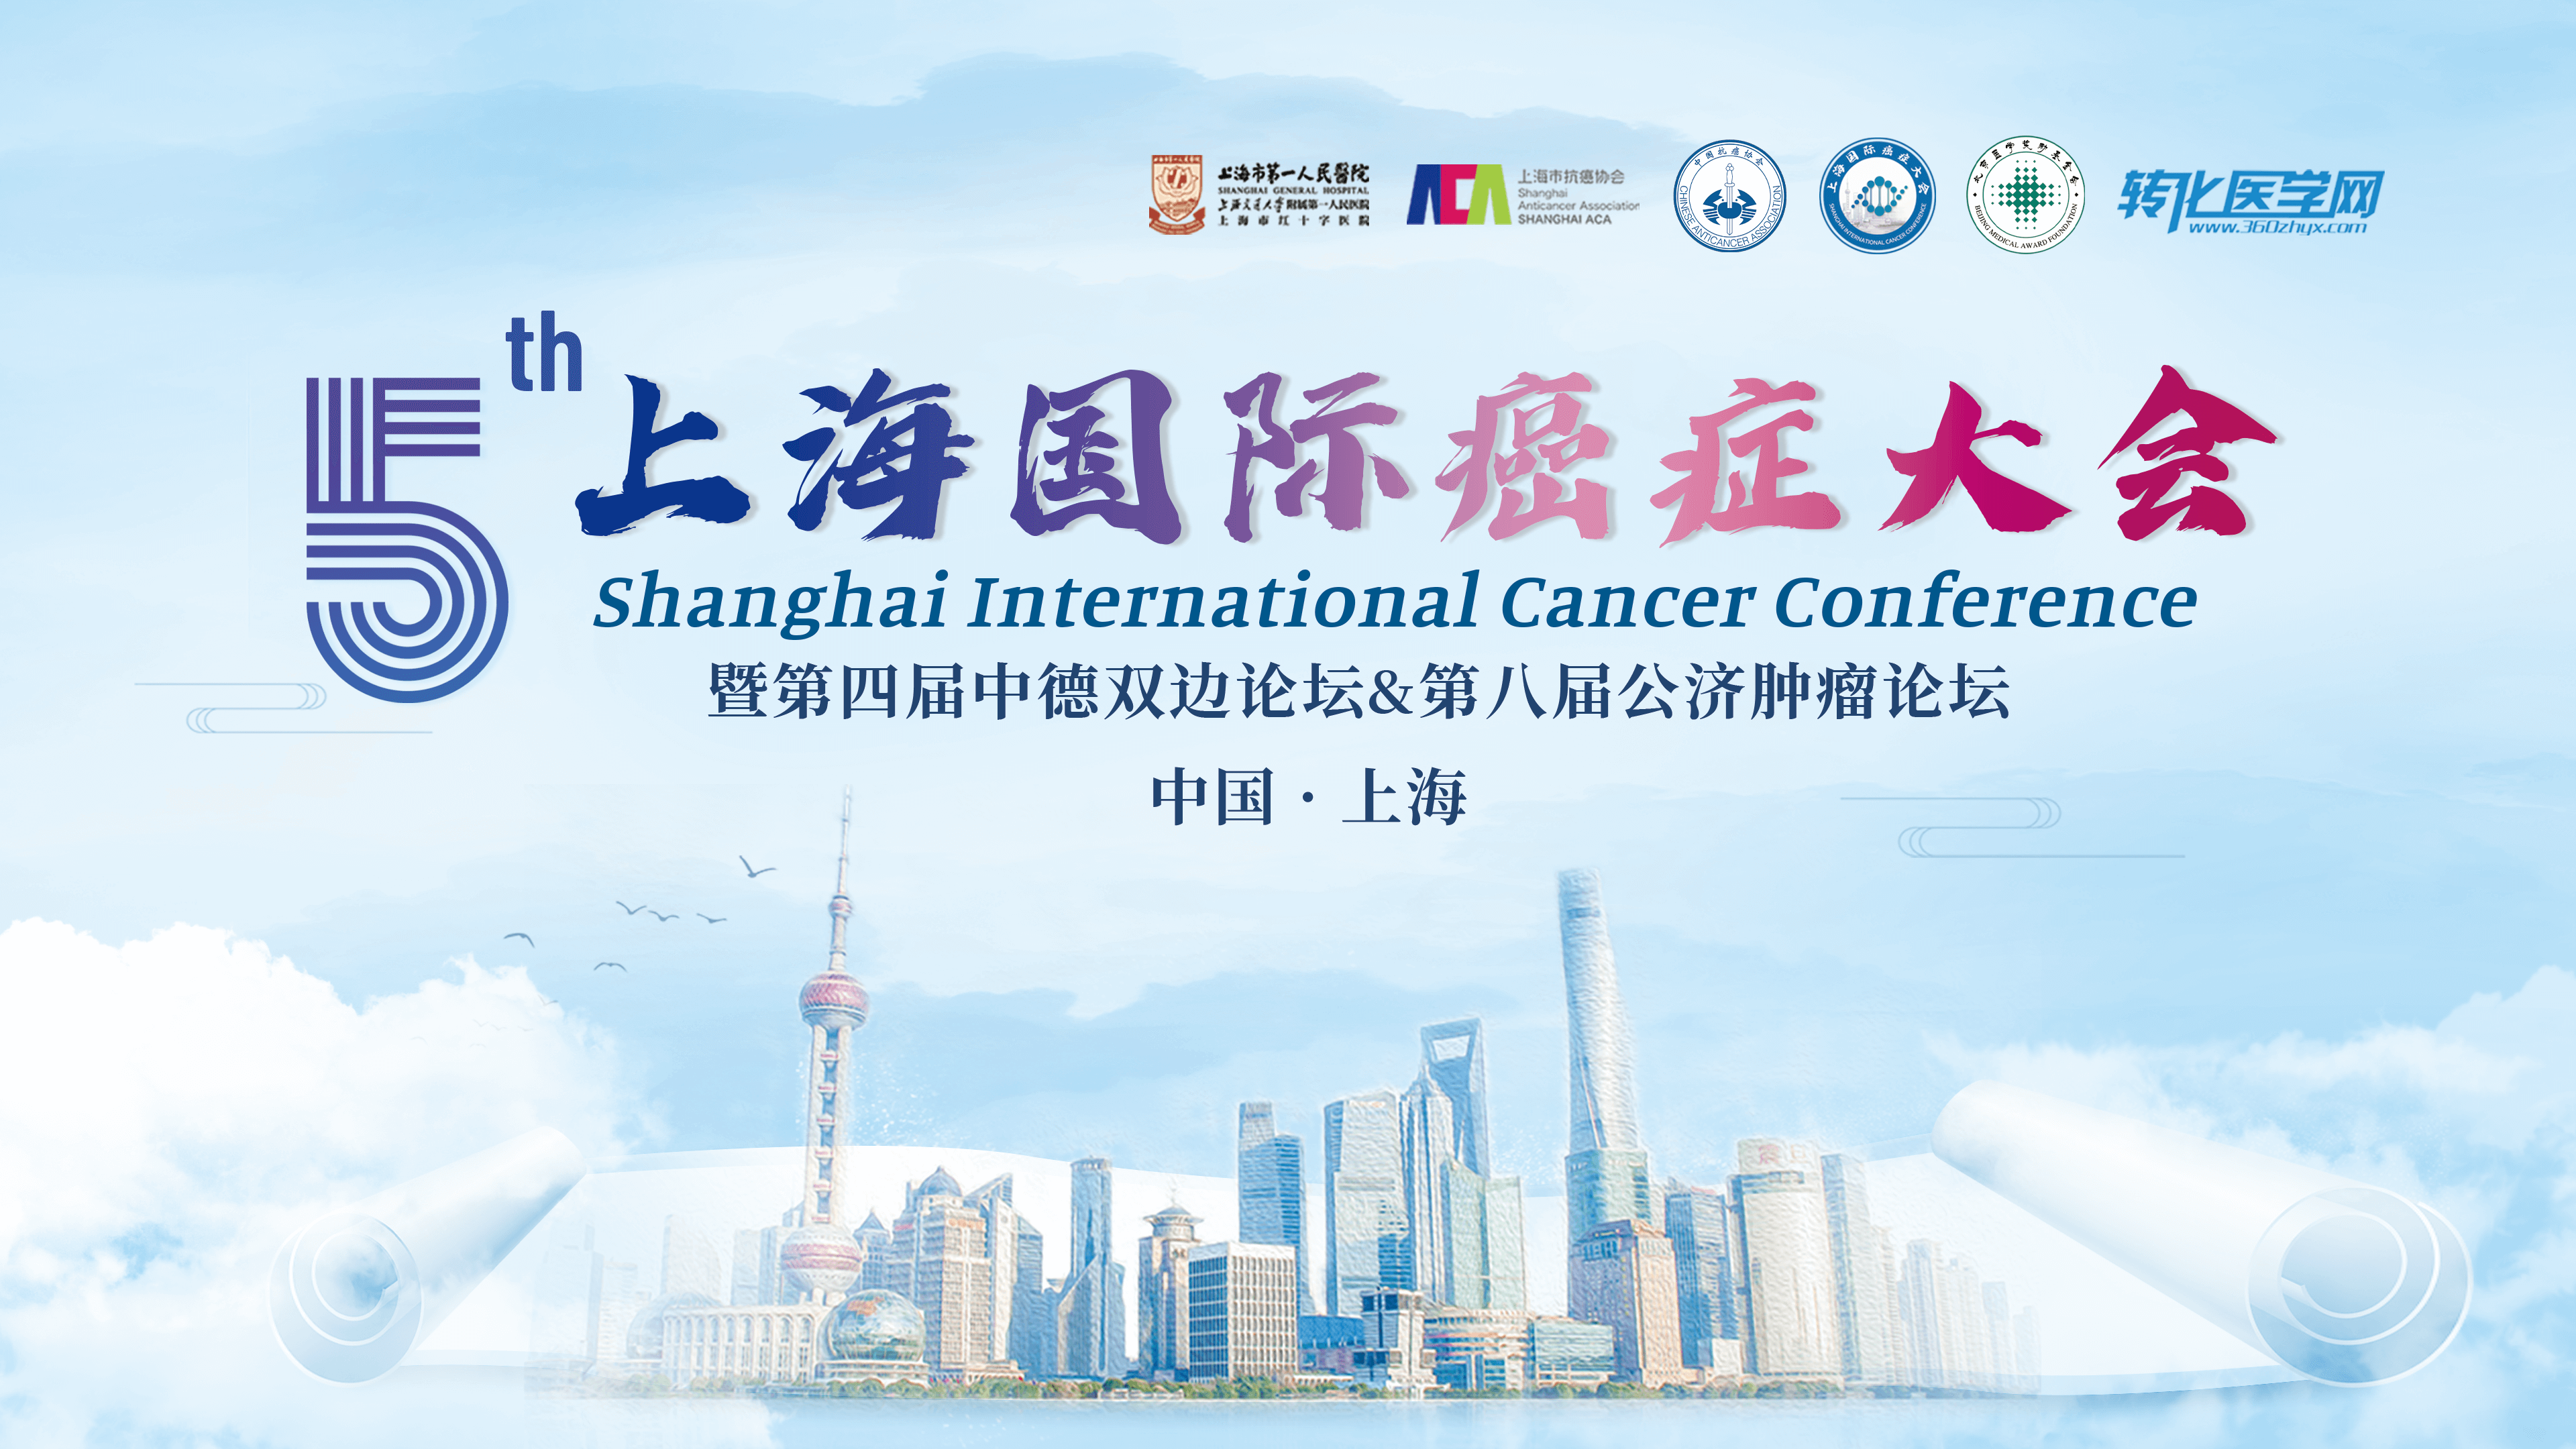 会议通知 | 锘海生物邀您共赴第五届上海国际癌症大会